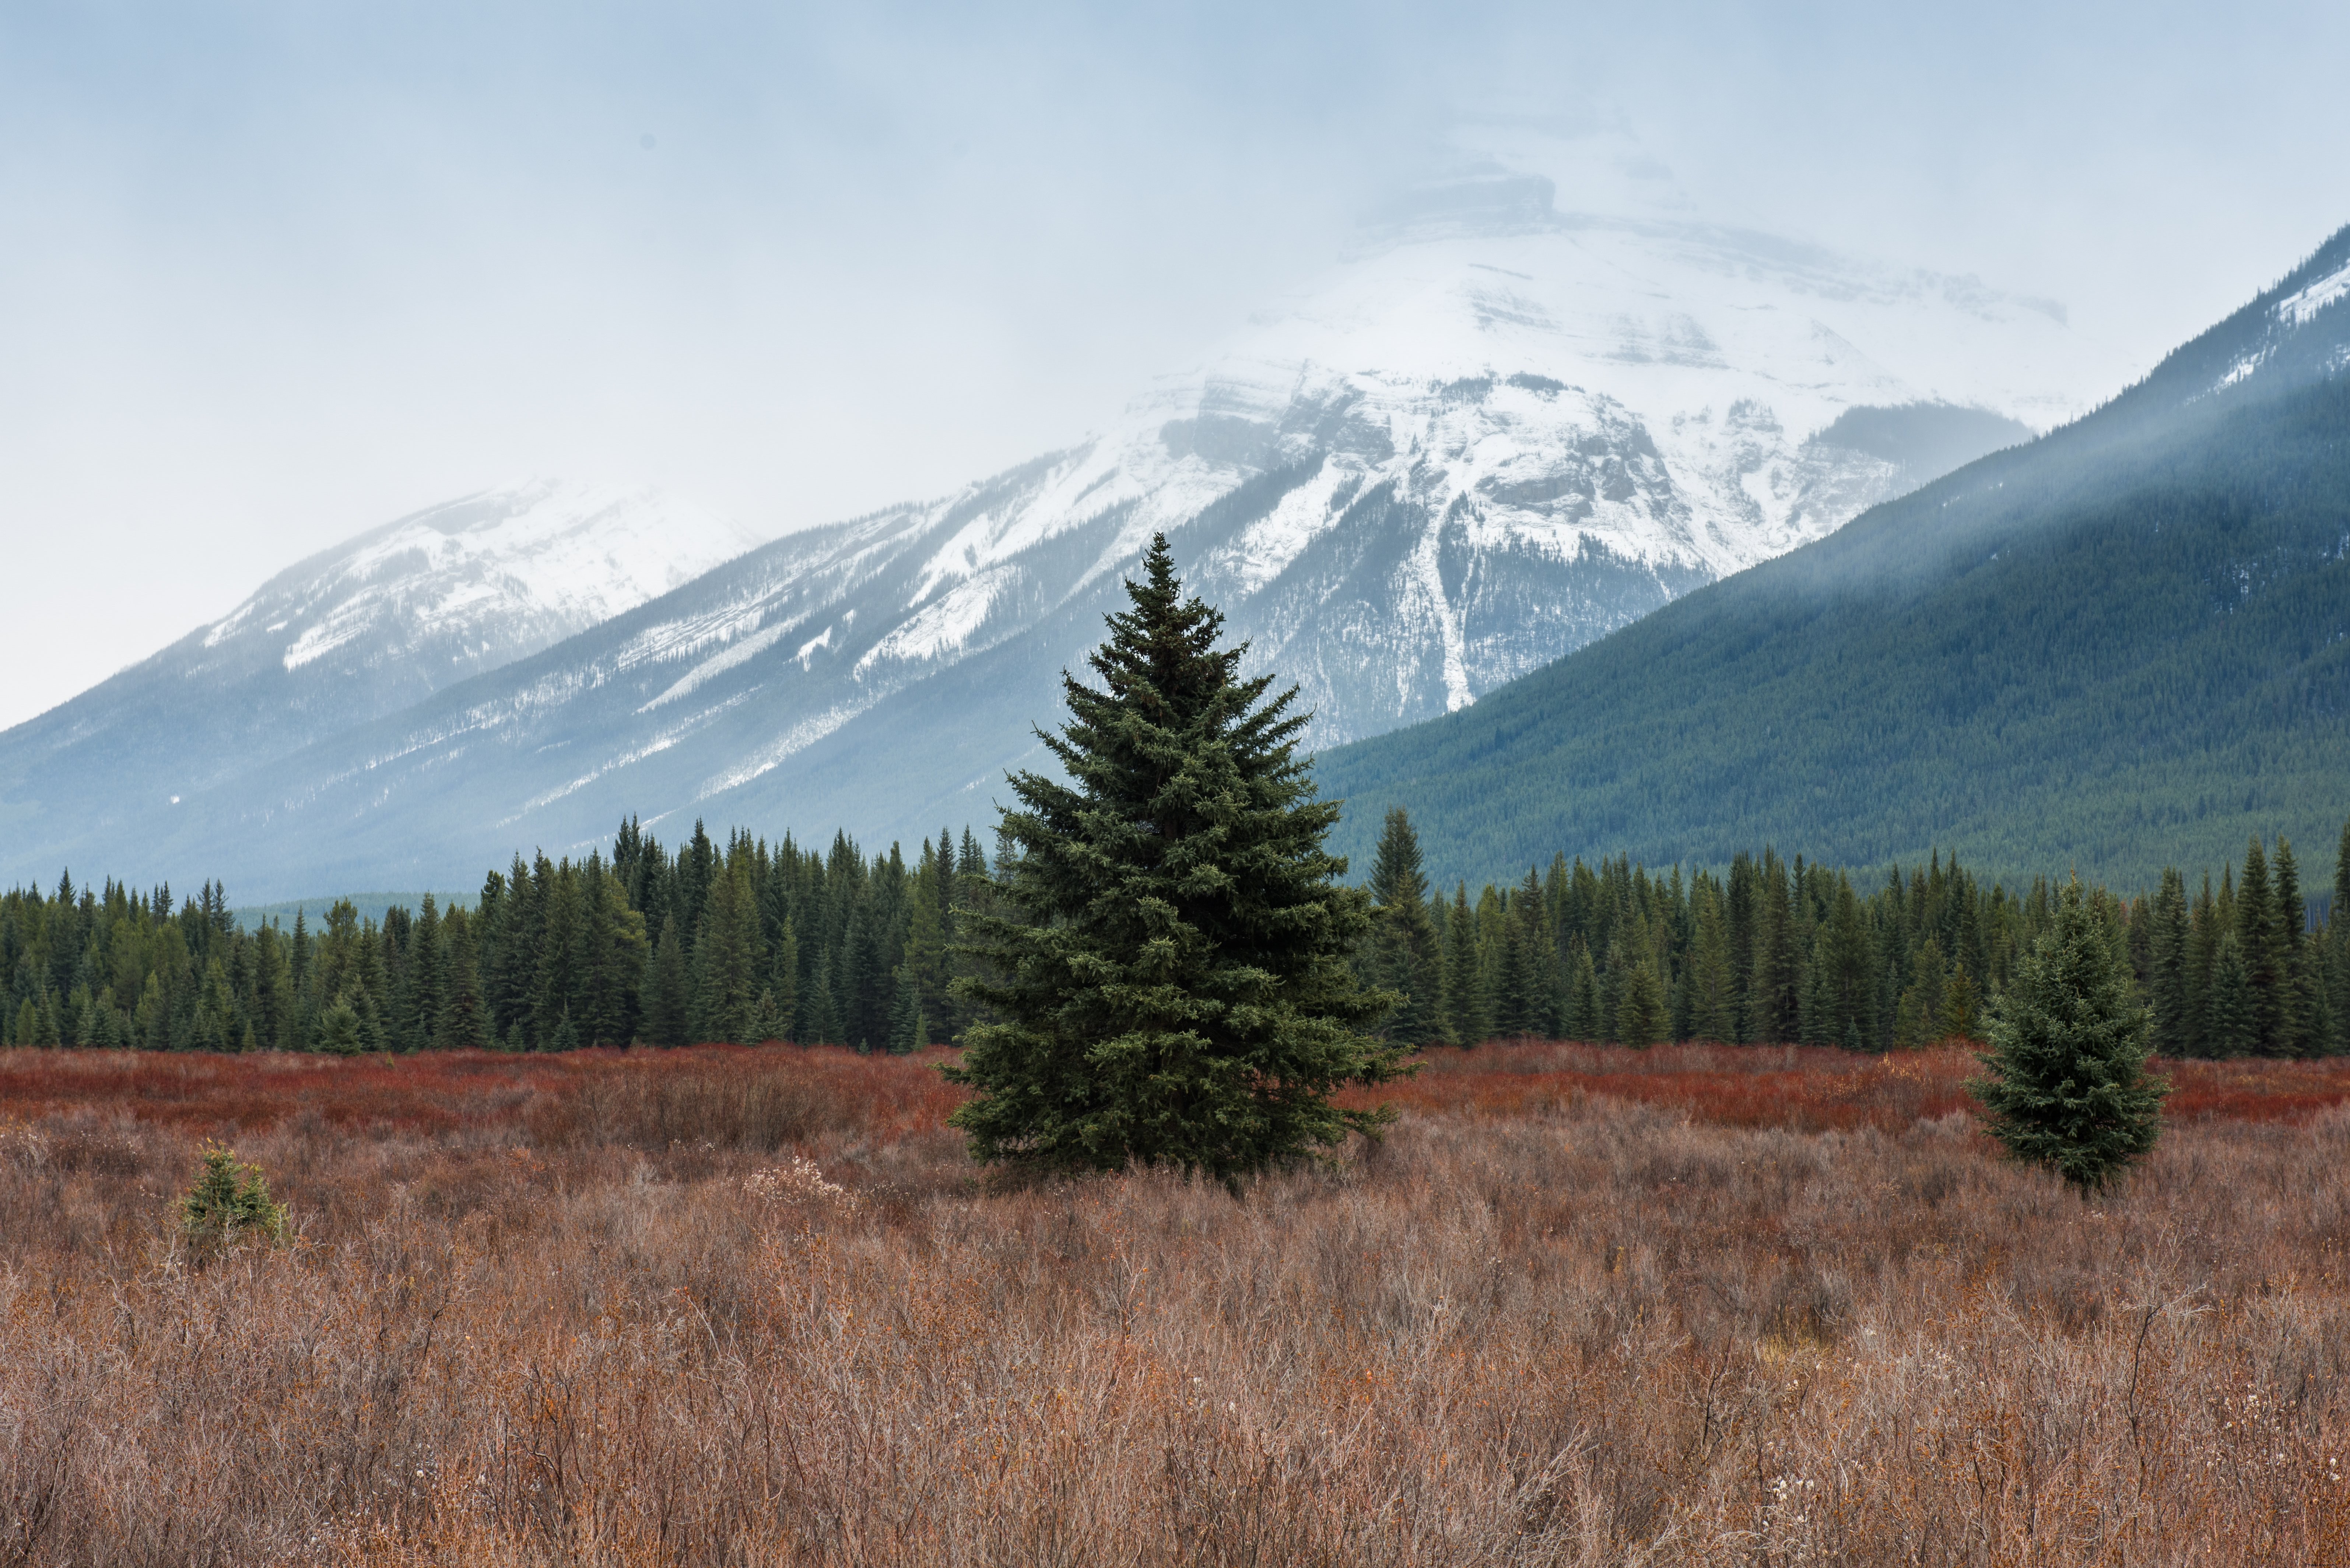 Um grande pinheiro em um campo selvagem em frente a montanhas nevadas.